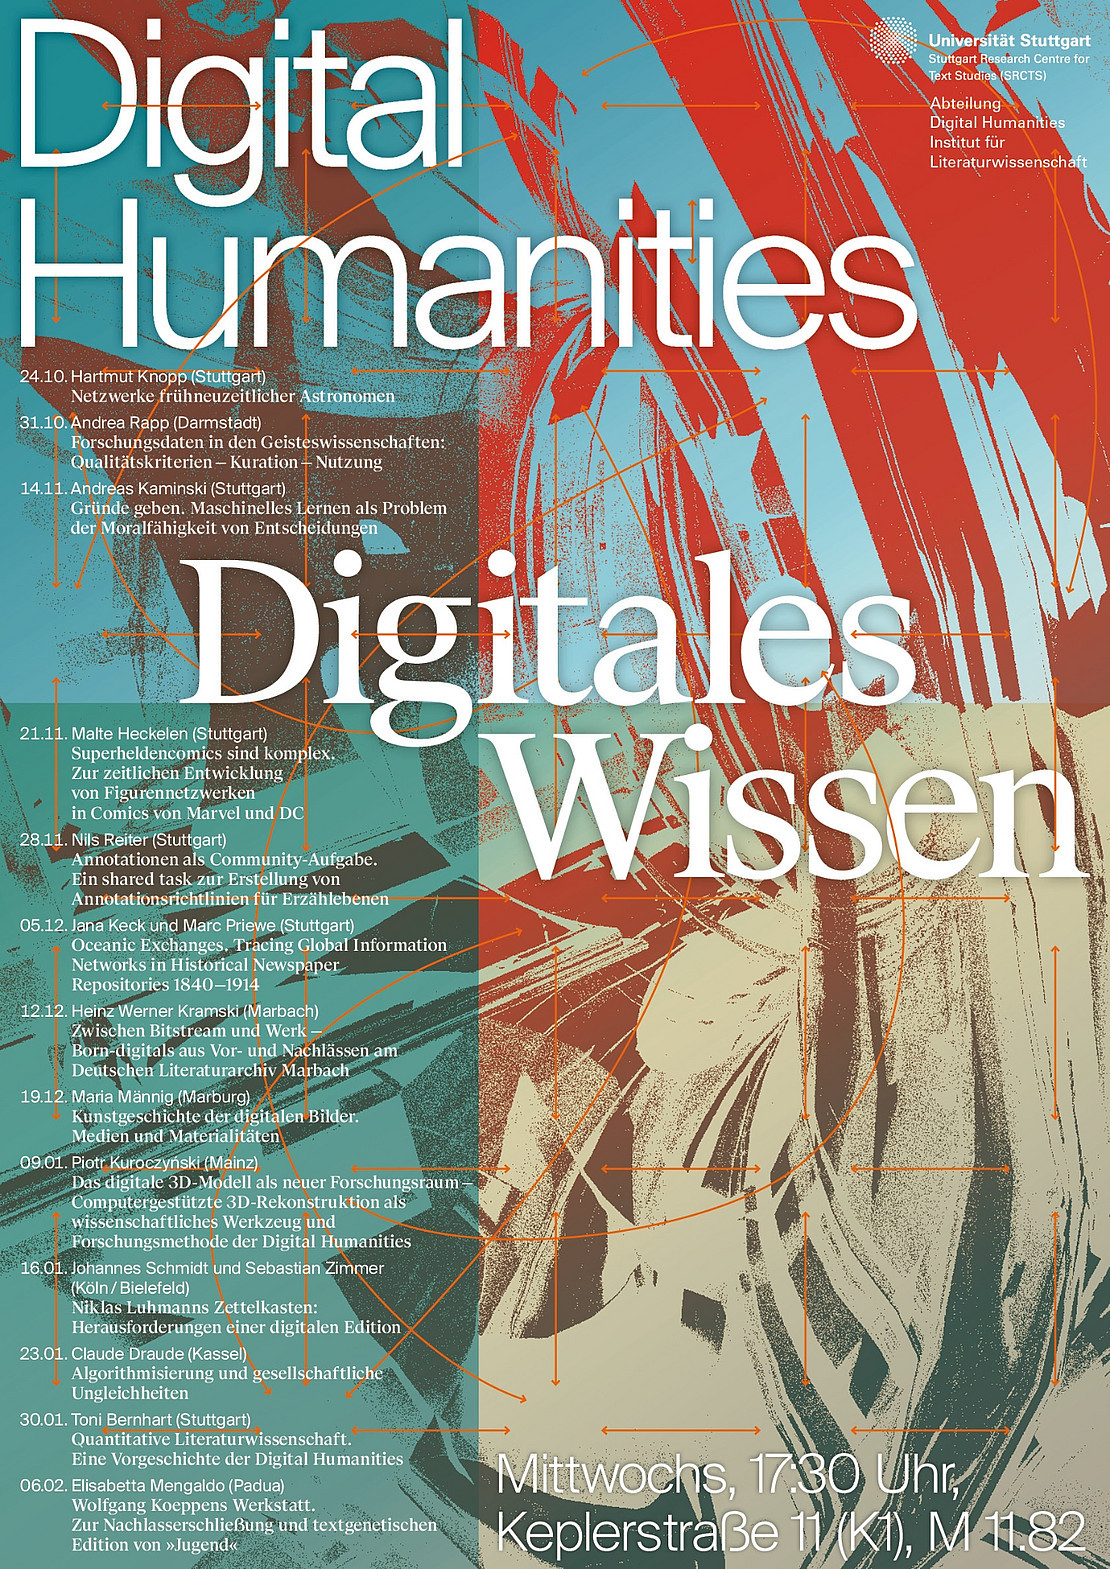 Digital Humanities - Digitales Wissen, Mittwochs, 17:30 Uhr, Keplerstraße 11 (K1), M 11.82, Universität Stuttgart